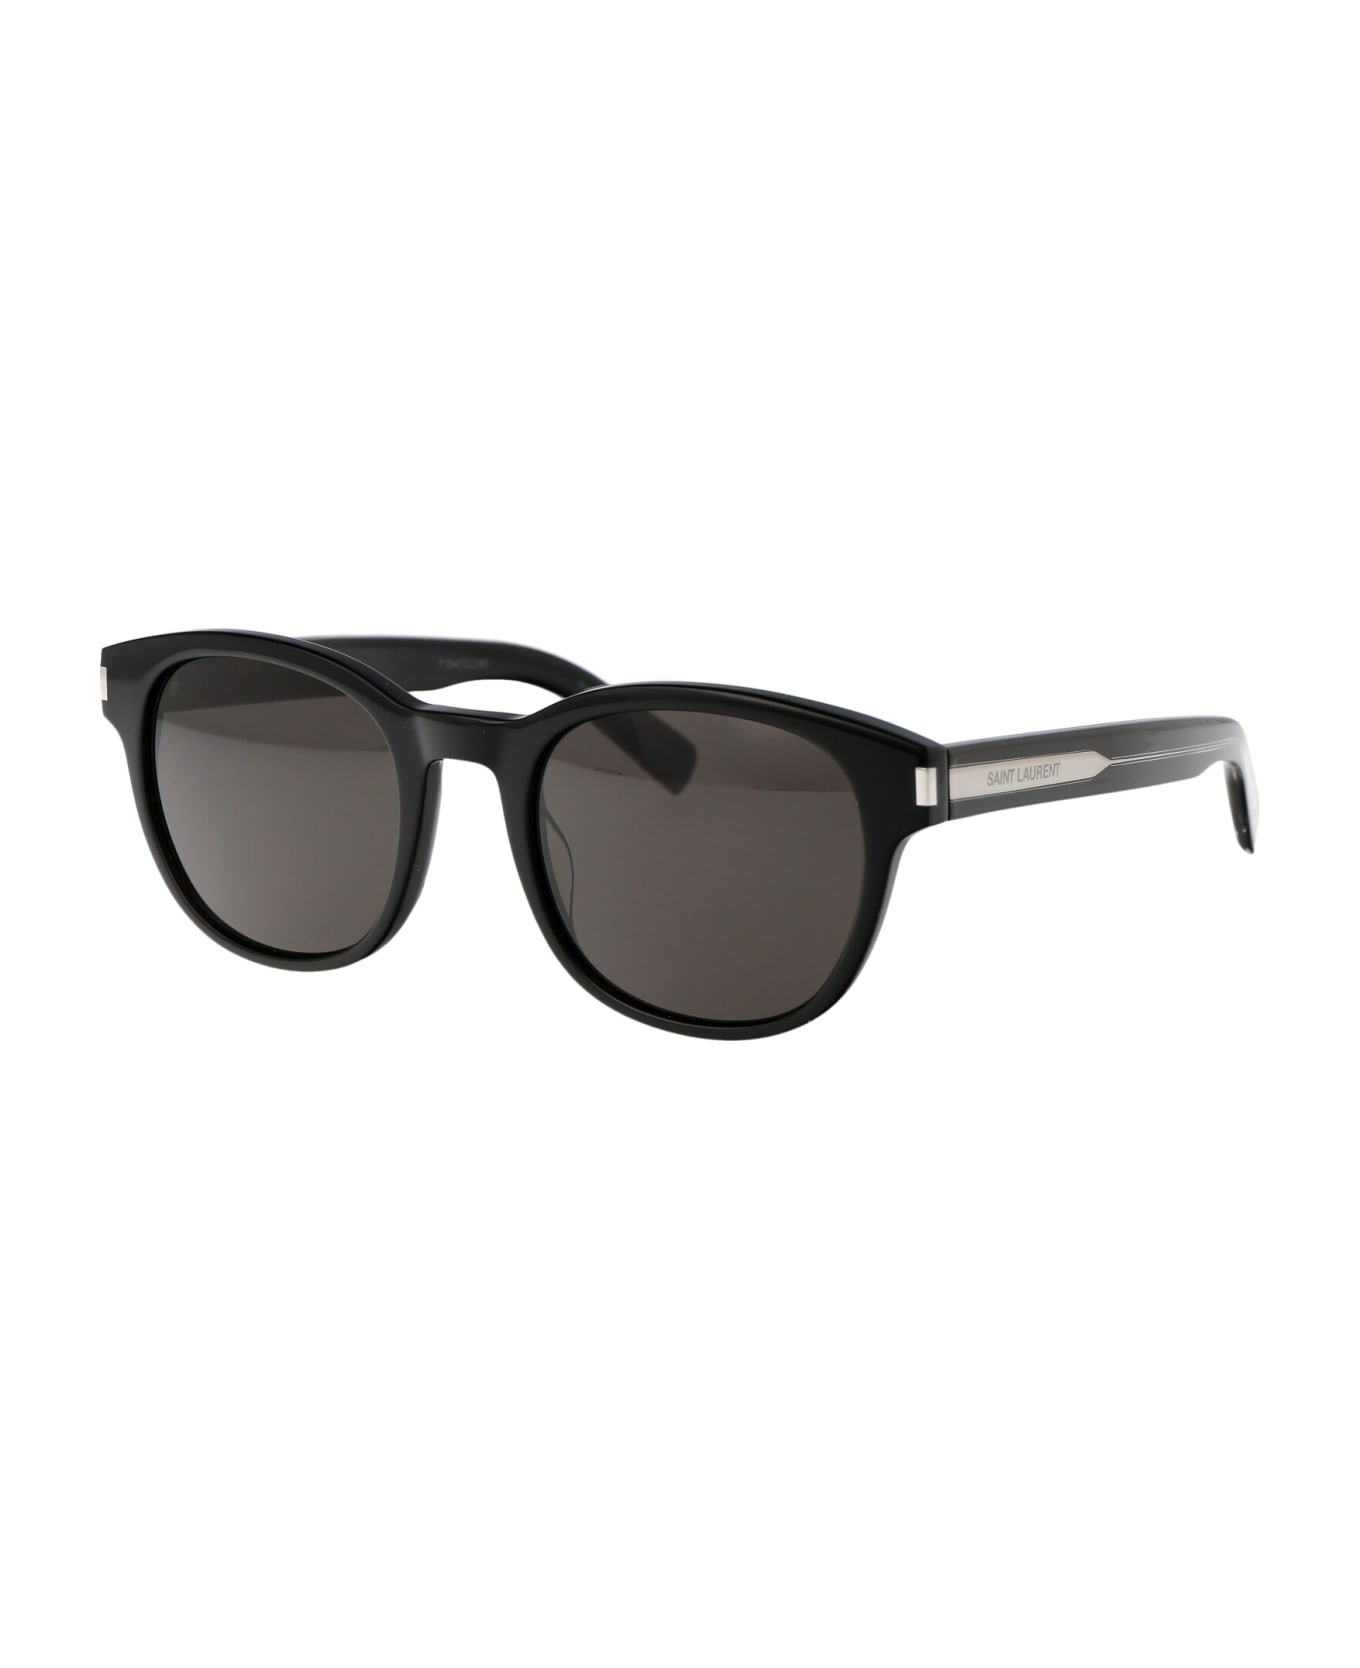 Saint Laurent Eyewear Sl 620 Sunglasses - 001 BLACK CRYSTAL BLACK